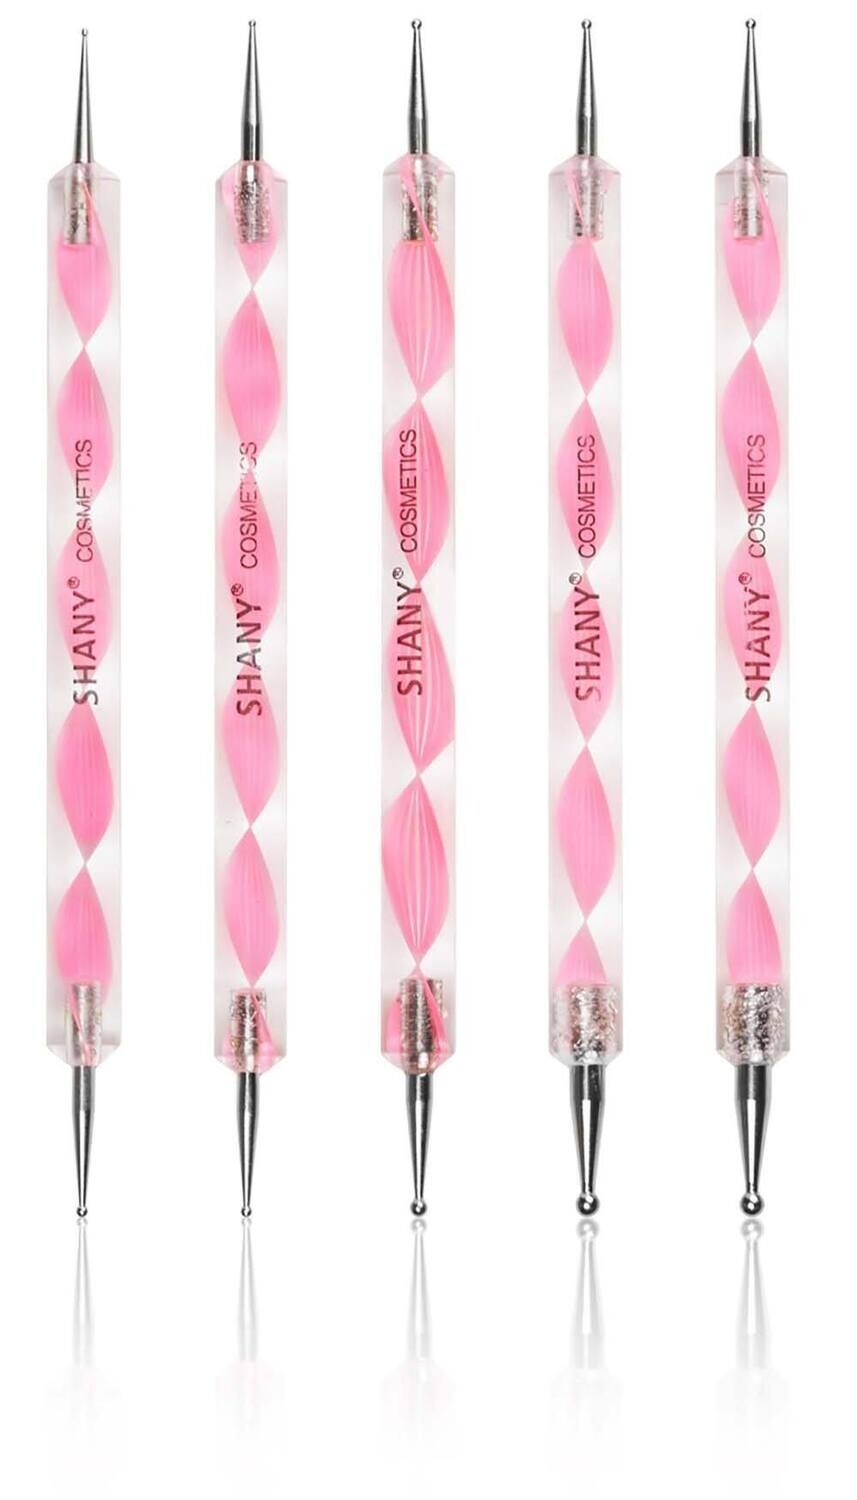 Marbleizing Dotting Pen Brush Sets - set of 5 x 2 way brushes